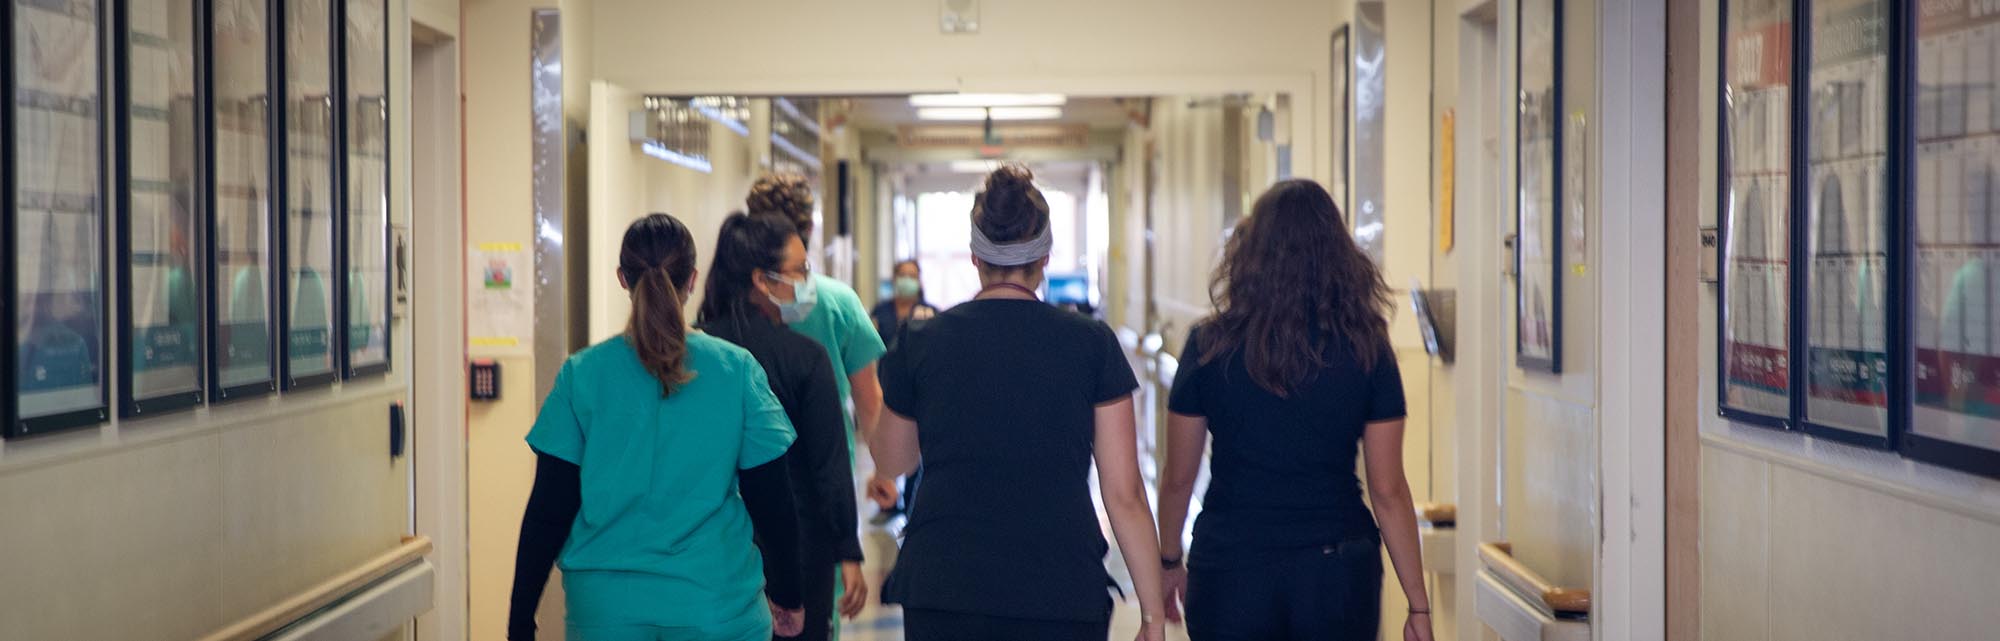 Infirmières de l'UNM marchant dans un couloir